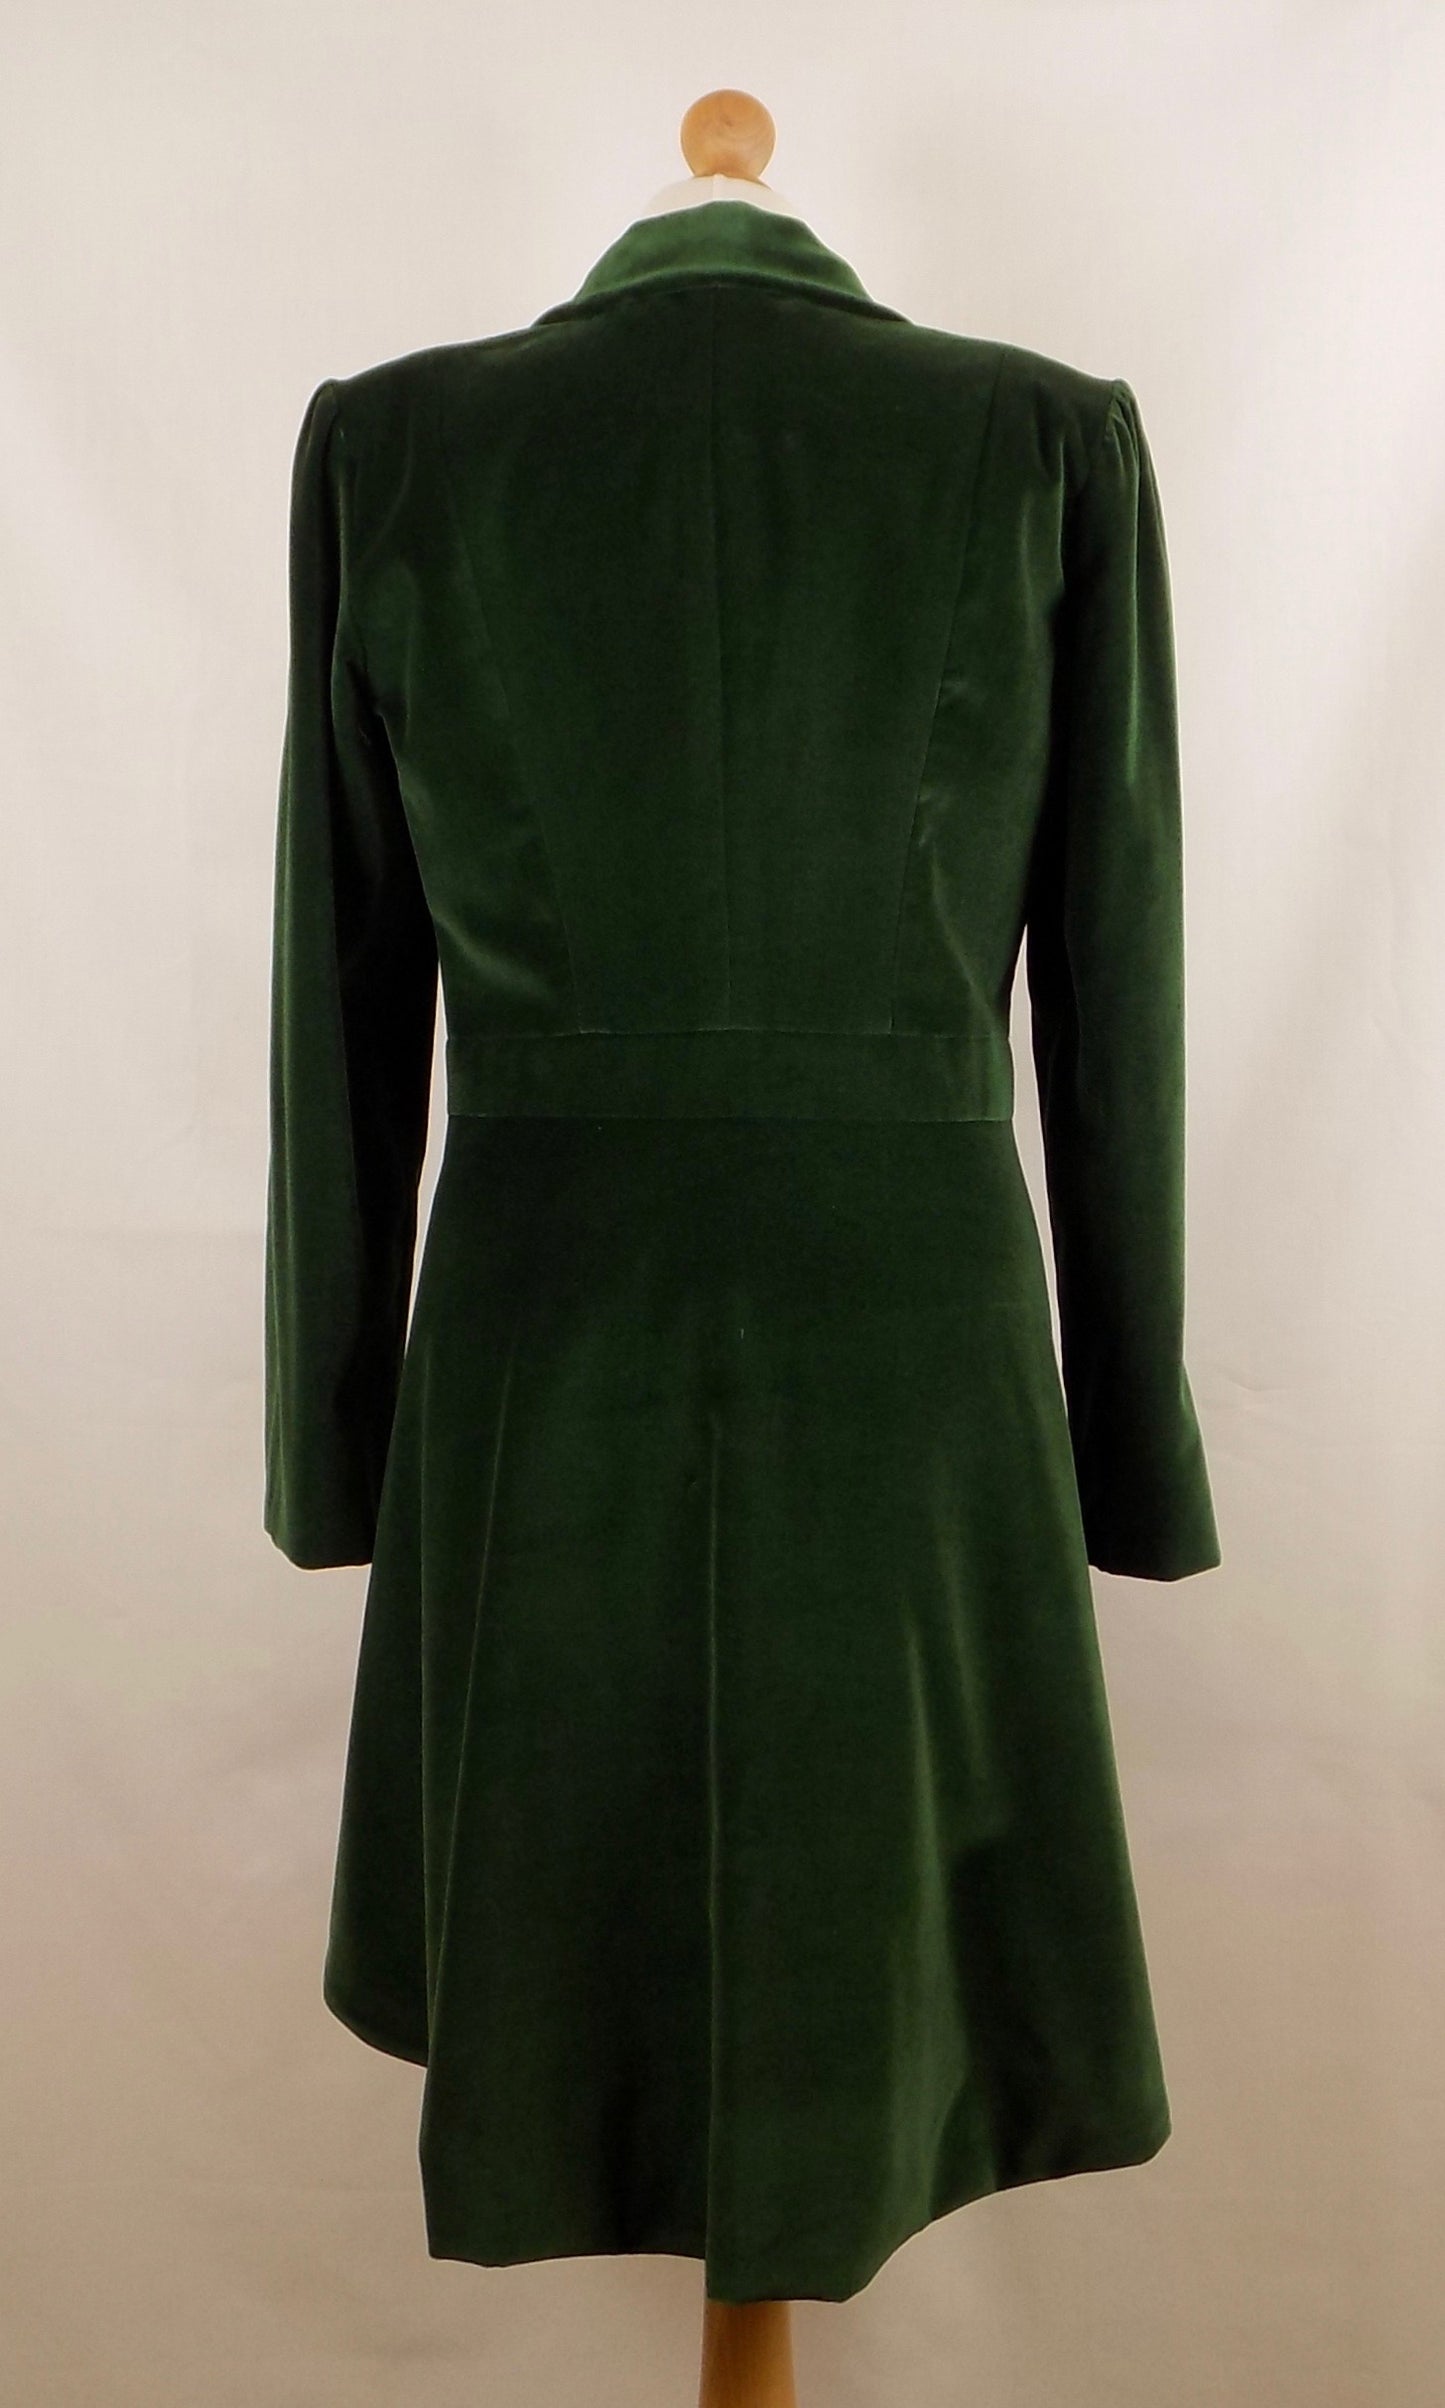 Tailored Velvet Jacket, Size 38